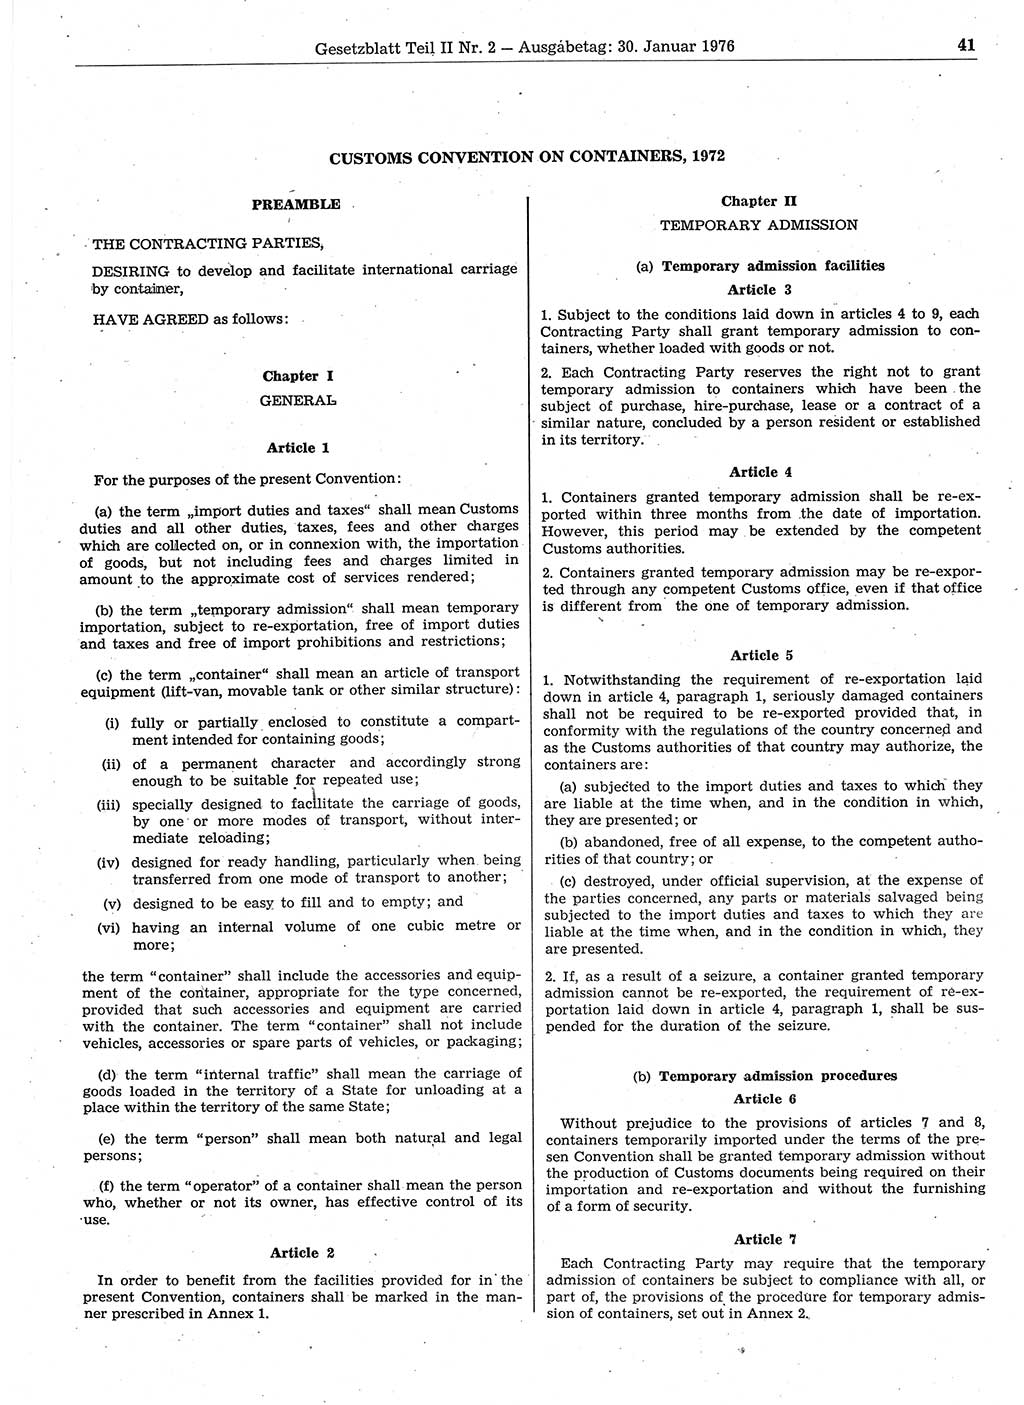 Gesetzblatt (GBl.) der Deutschen Demokratischen Republik (DDR) Teil ⅠⅠ 1976, Seite 41 (GBl. DDR ⅠⅠ 1976, S. 41)